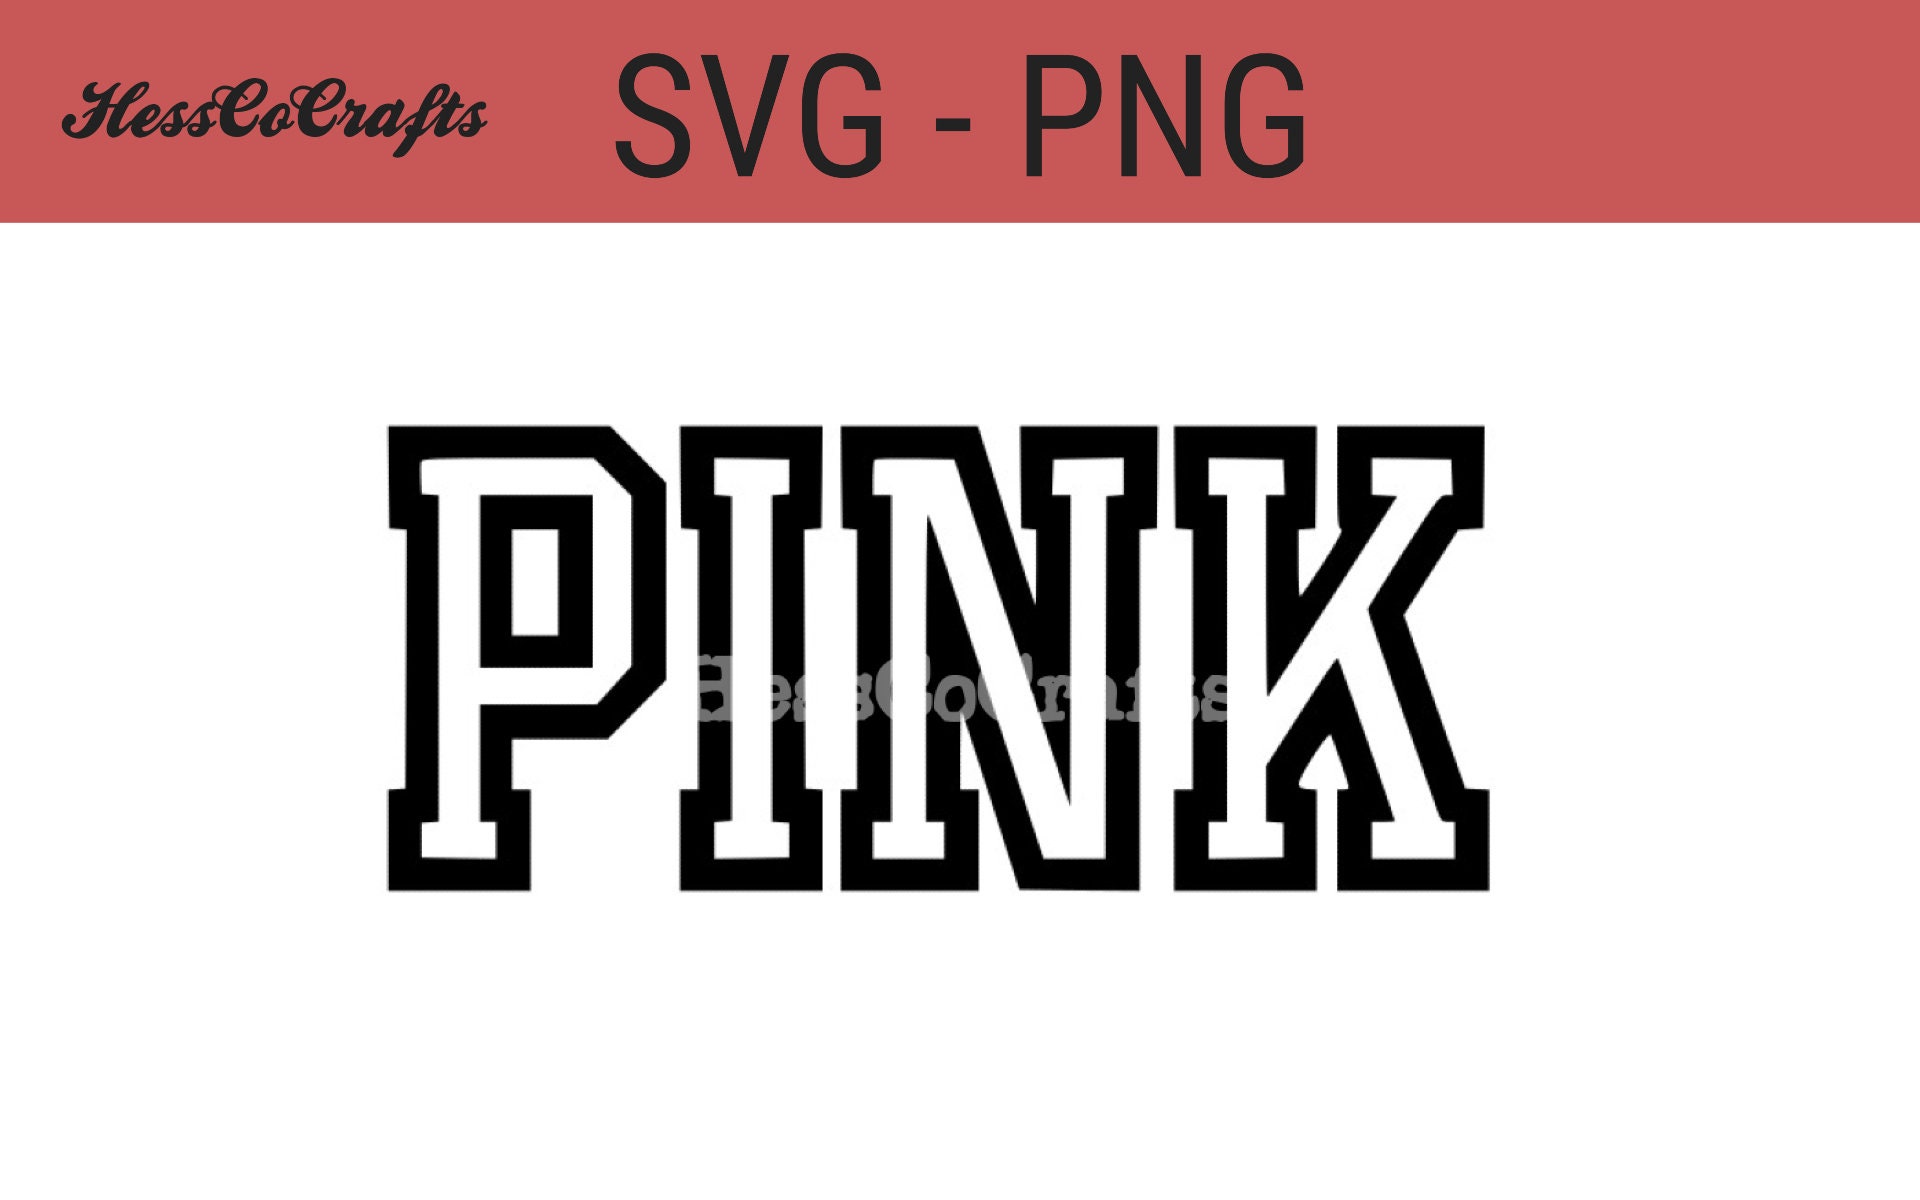 Pink Victoria Secret Clothes -  Canada